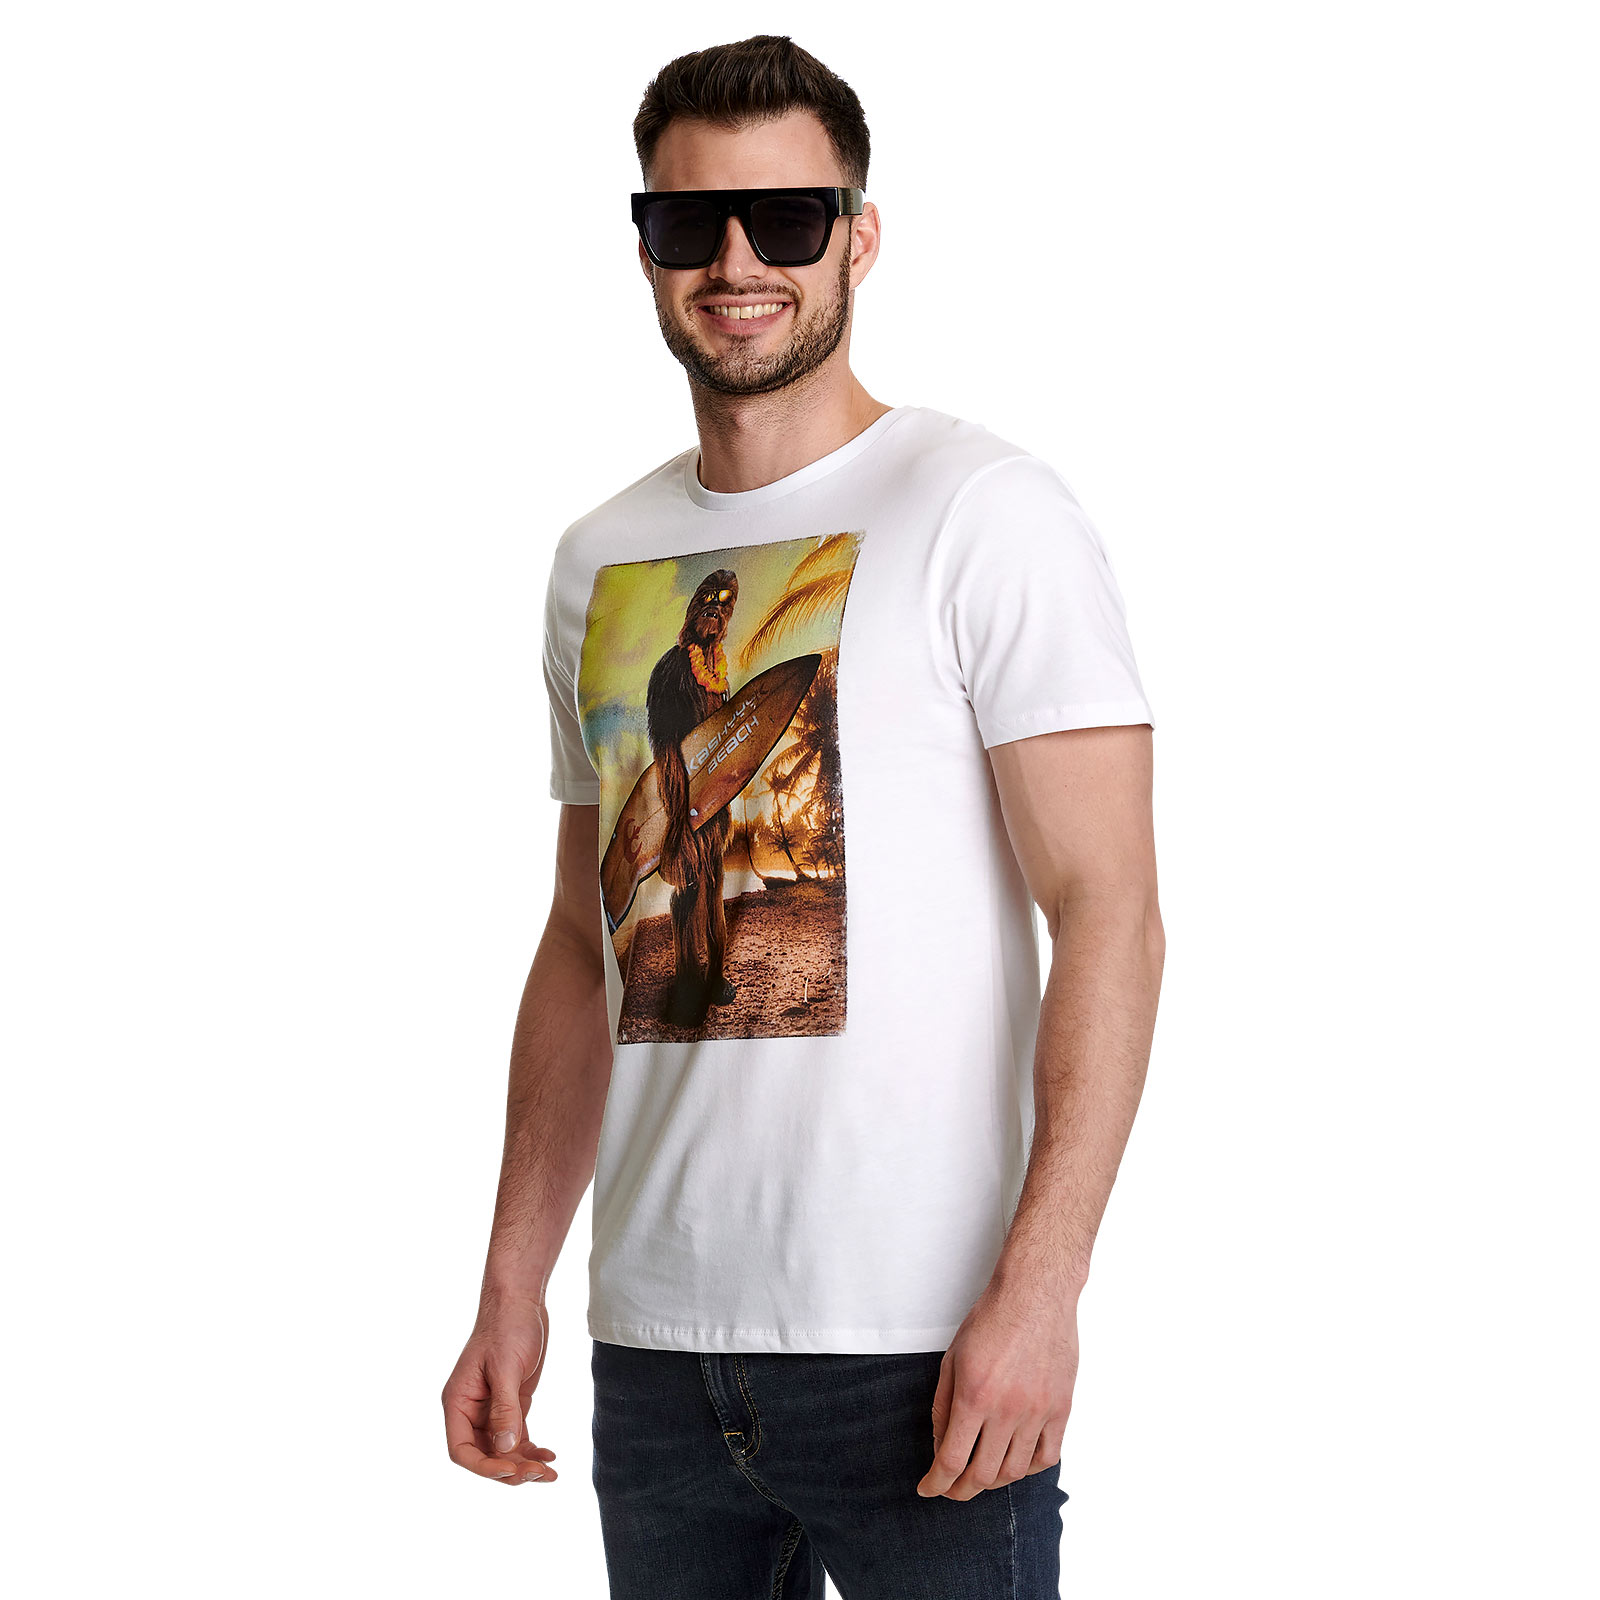 Star Wars - T-shirt Wookiee Surfer blanc